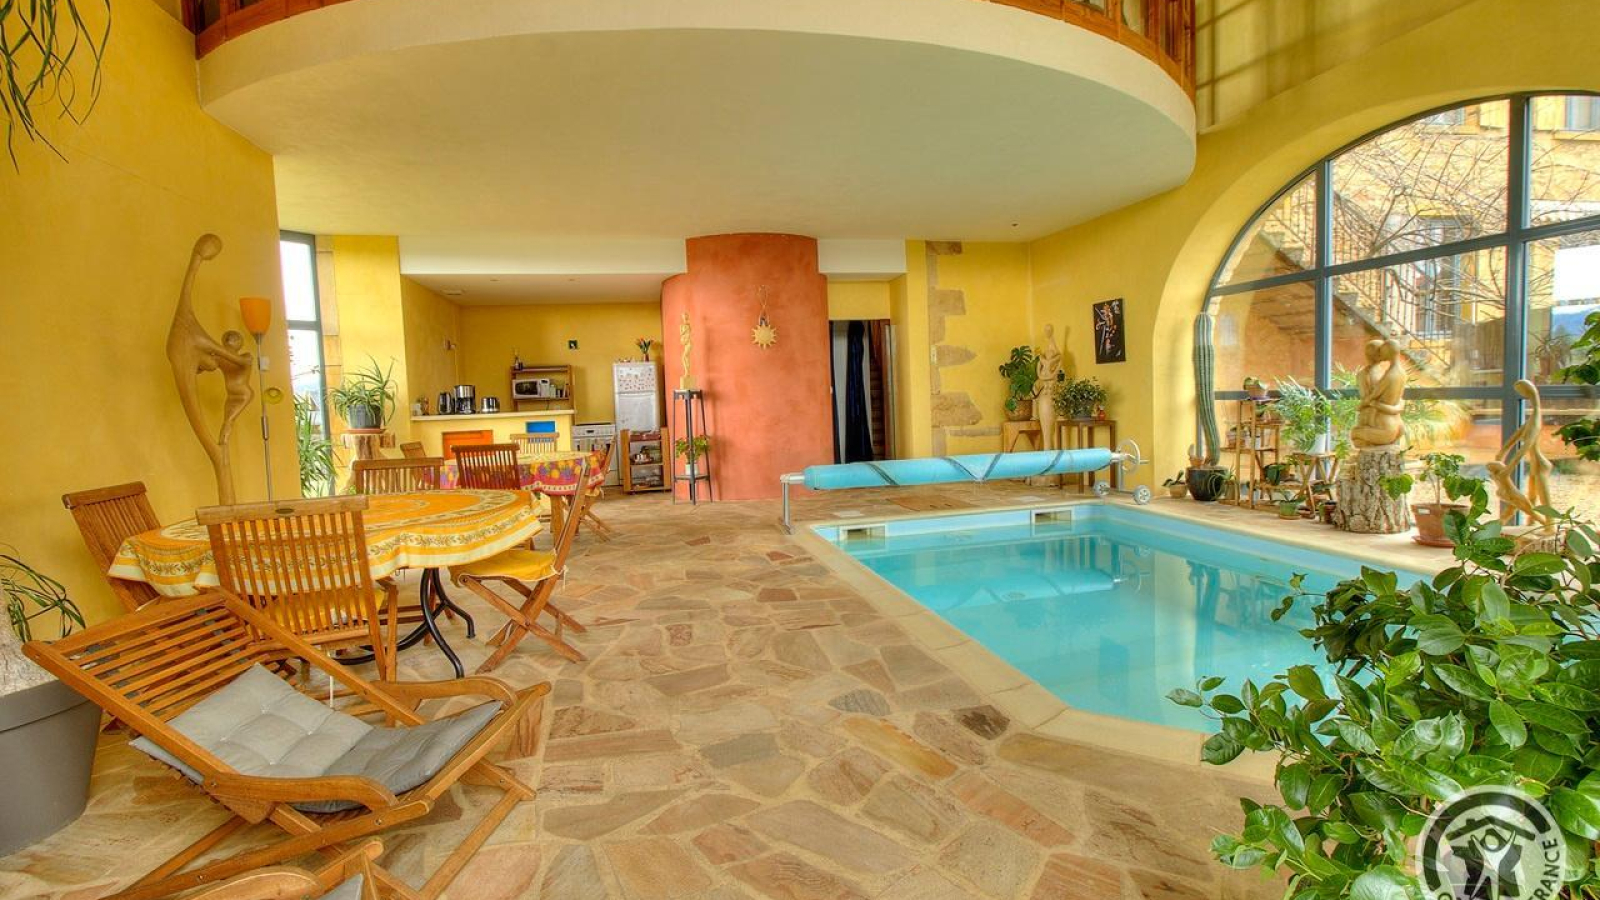 Chambres d'Hôtes 'L'Orée du Paradis', avec piscine intérieure, à St Laurent d'Oingt/Val d'Oingt, dans le Beaujolais - Rhône : la salle au rez-de-chaussée avec piscine.